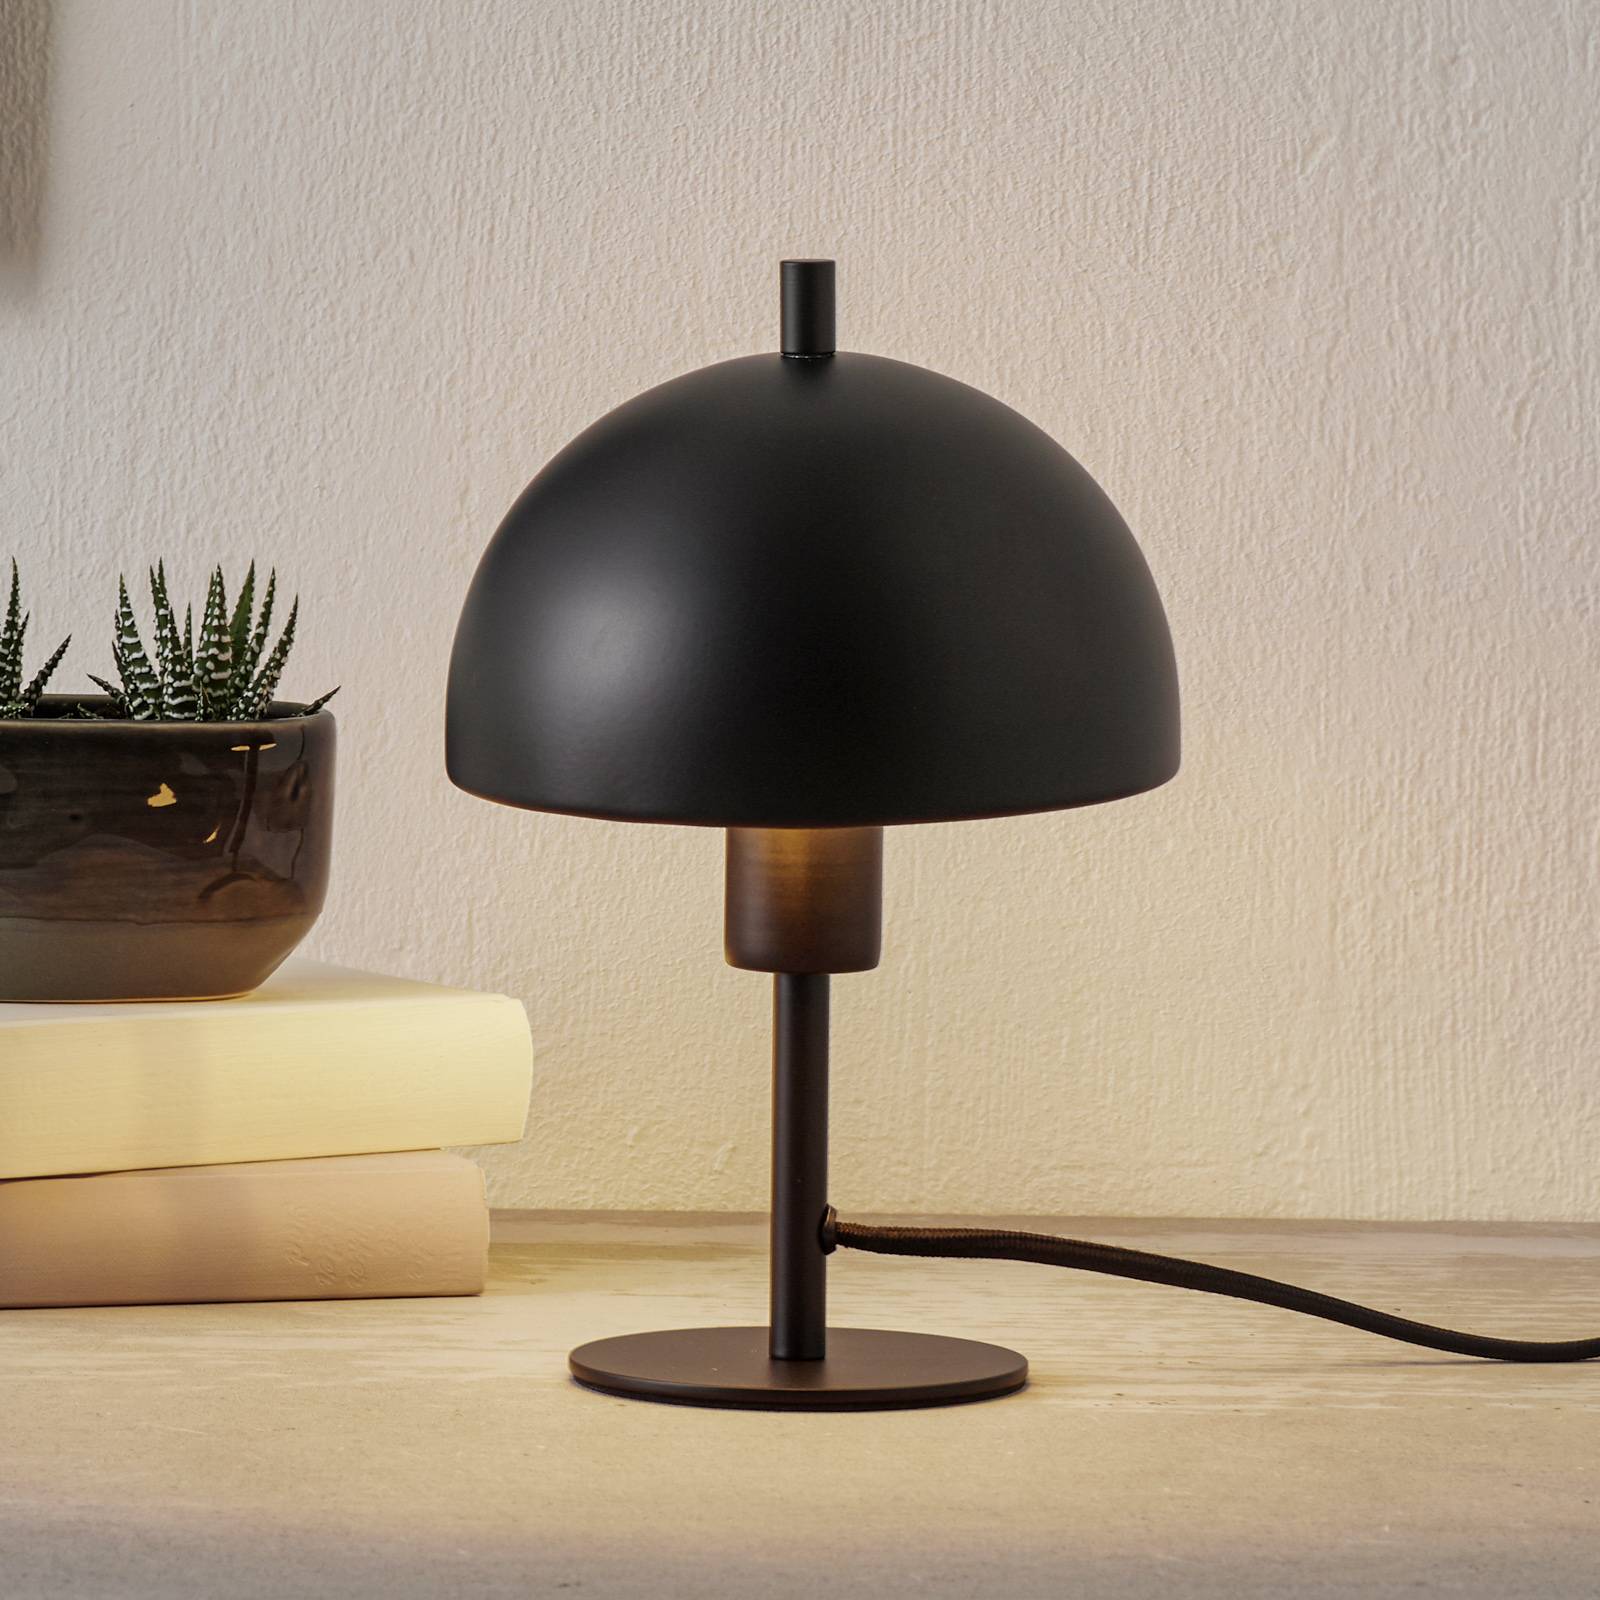 Schöner Wohnen Kia -pöytälamppu, musta, 24 cm